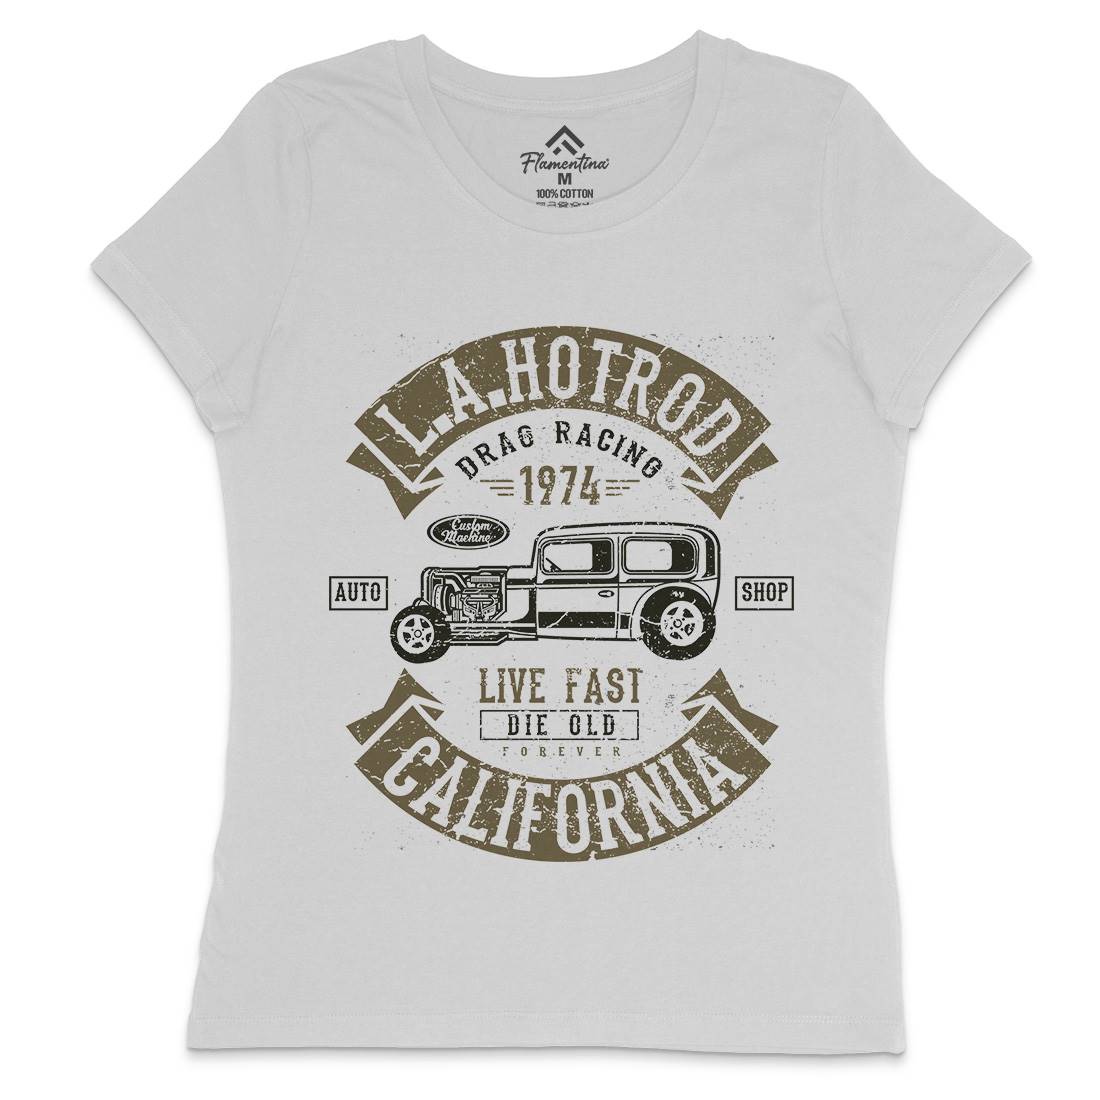 La Hotrod Womens Crew Neck T-Shirt Cars A080